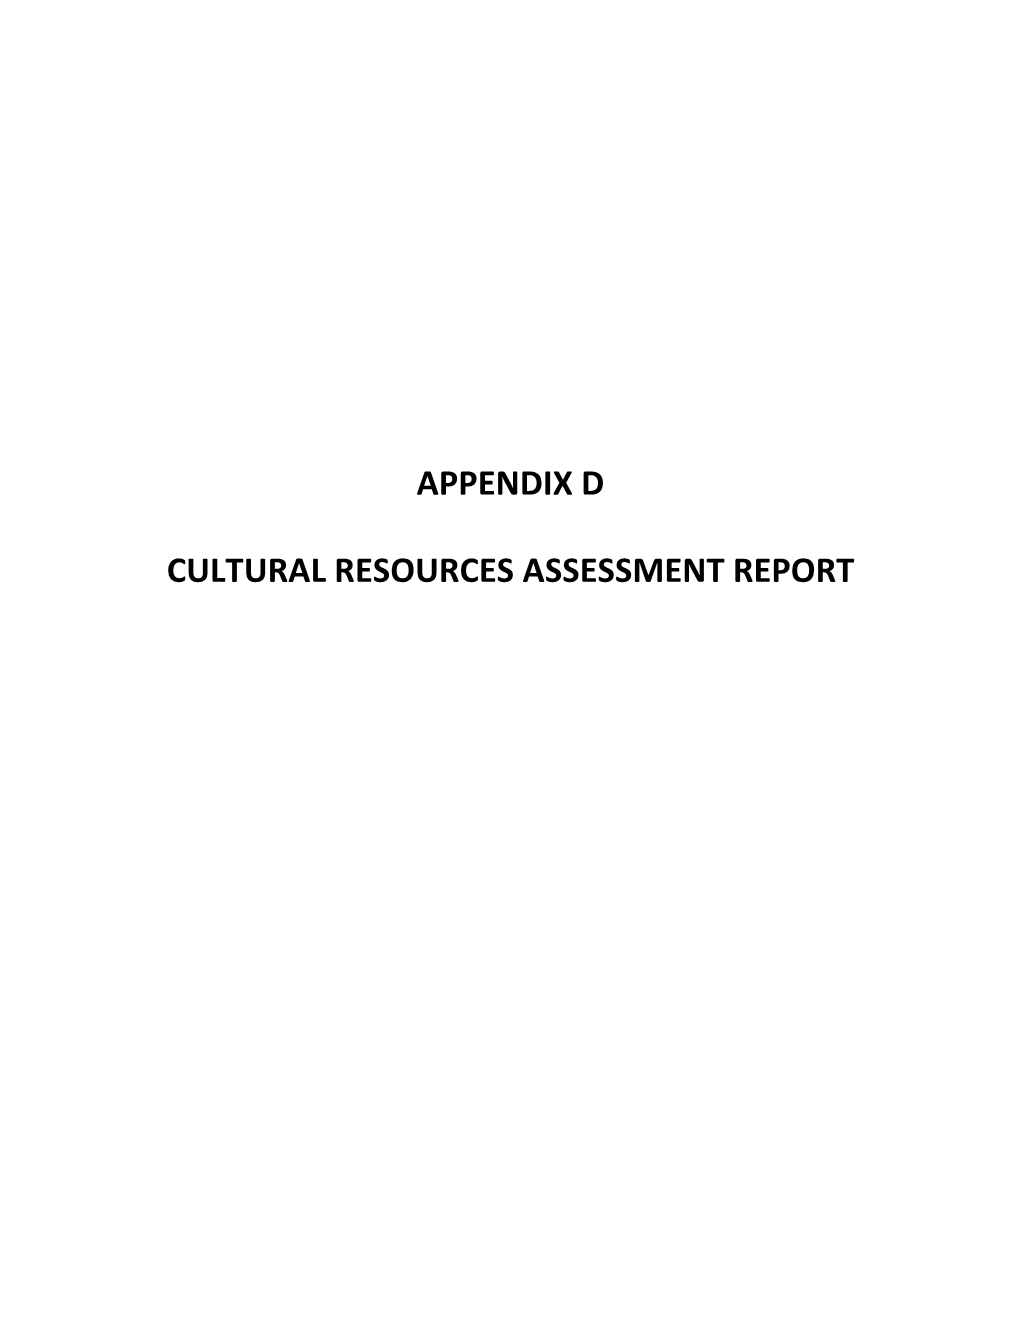 Appendix D Cultural Resources Assessment